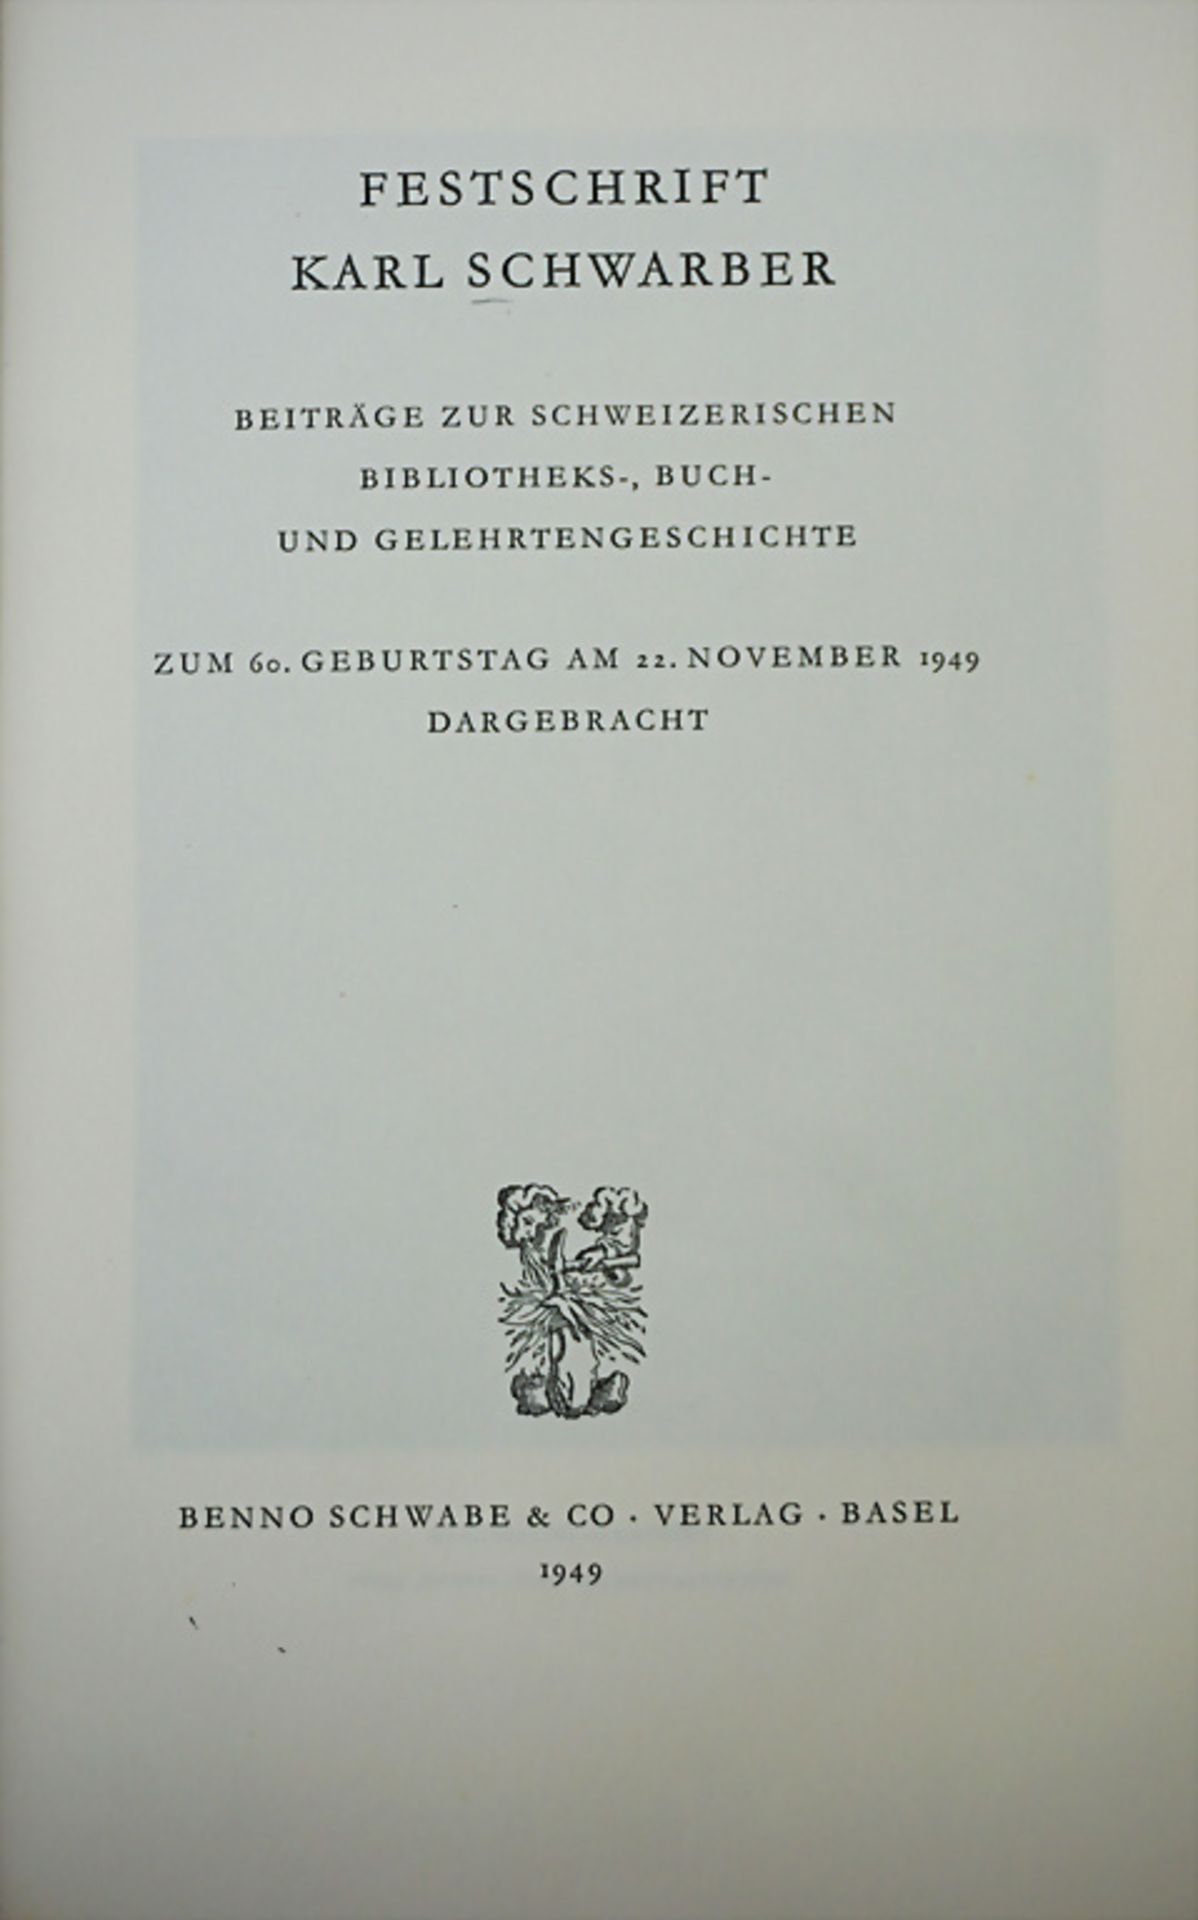 Karl Schwarber: Festschrift. Beiträge zur schweizerischen Bibliotheks, Buch- und ...